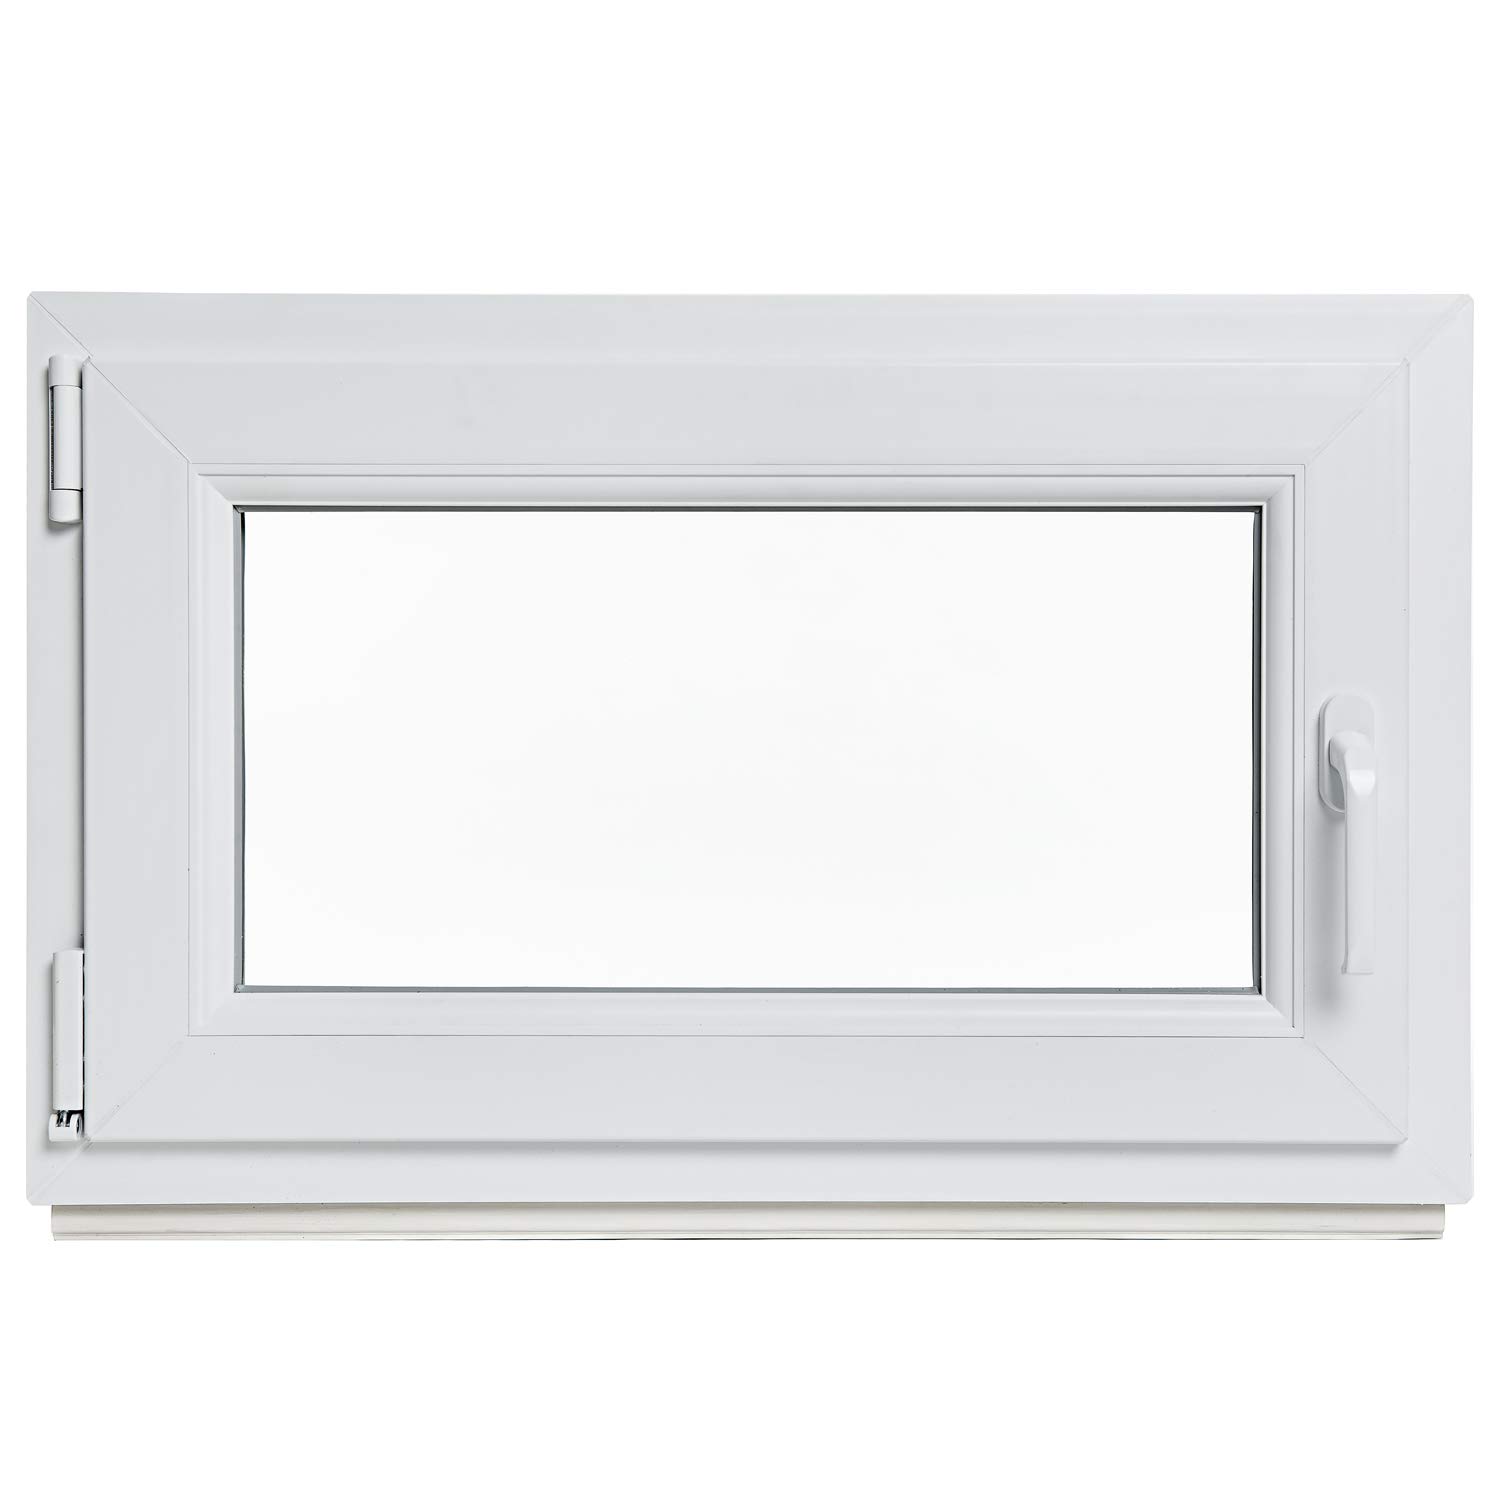 Kellerfenster - Kunststoff - Fenster - weiß - BxH: 110 x 60 cm - DIN rechts - 3-fach-Verglasung - Lagerware